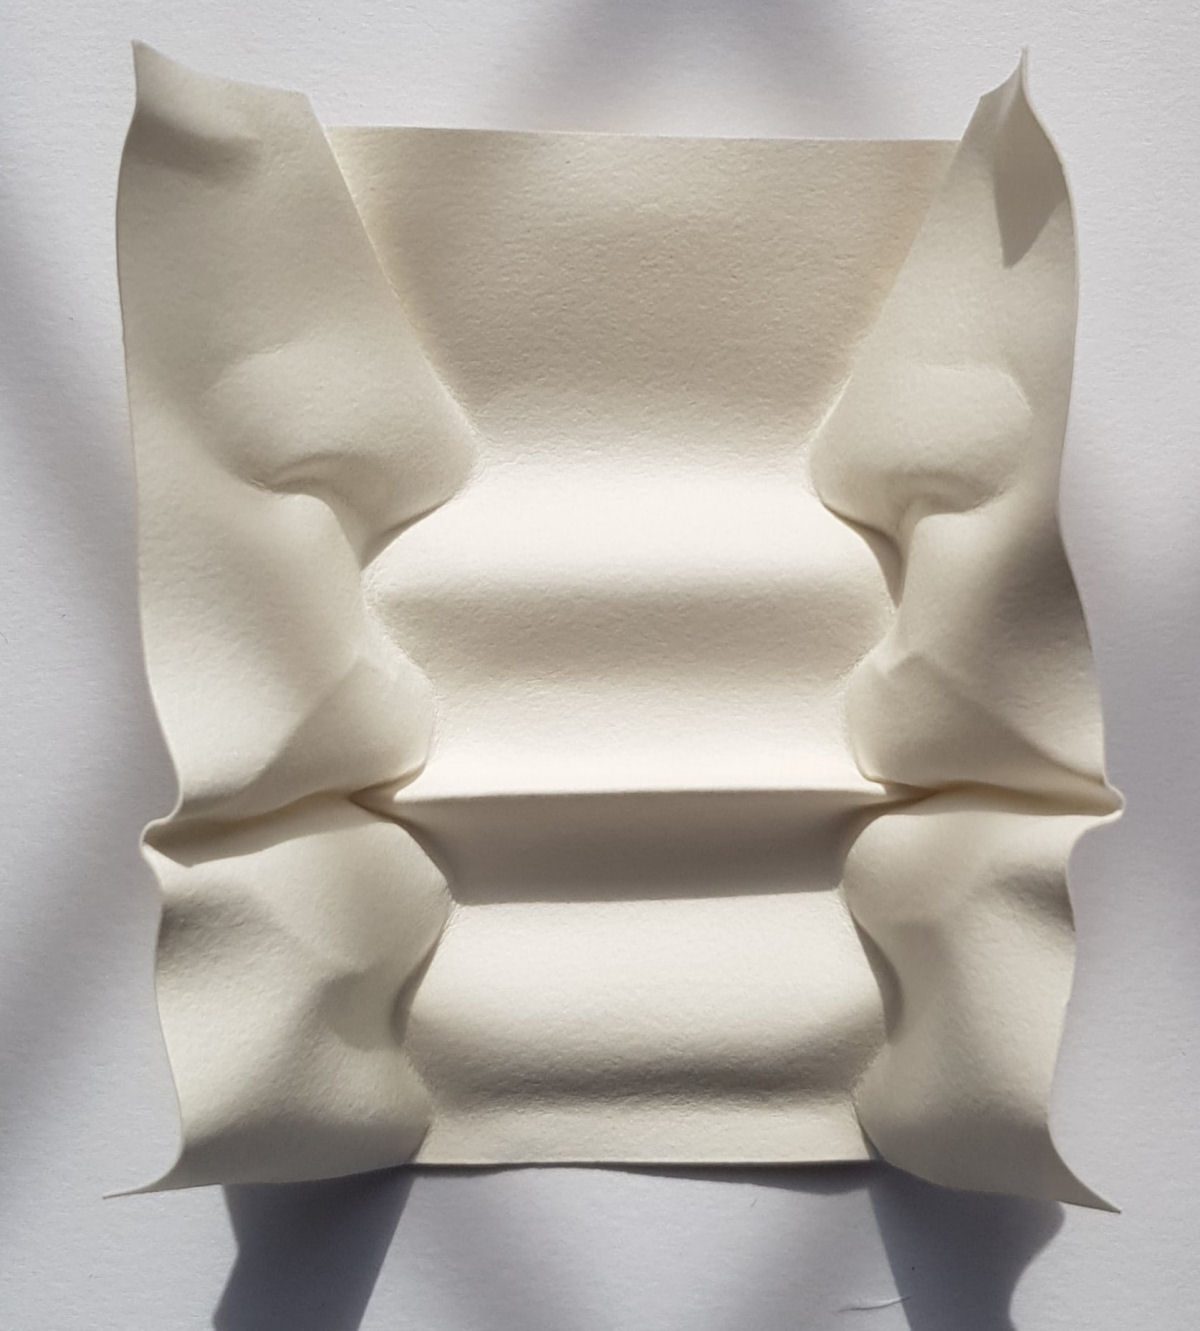 Esculturas sensuais em simples folhas de papel sugerem momentos de intimidade 07